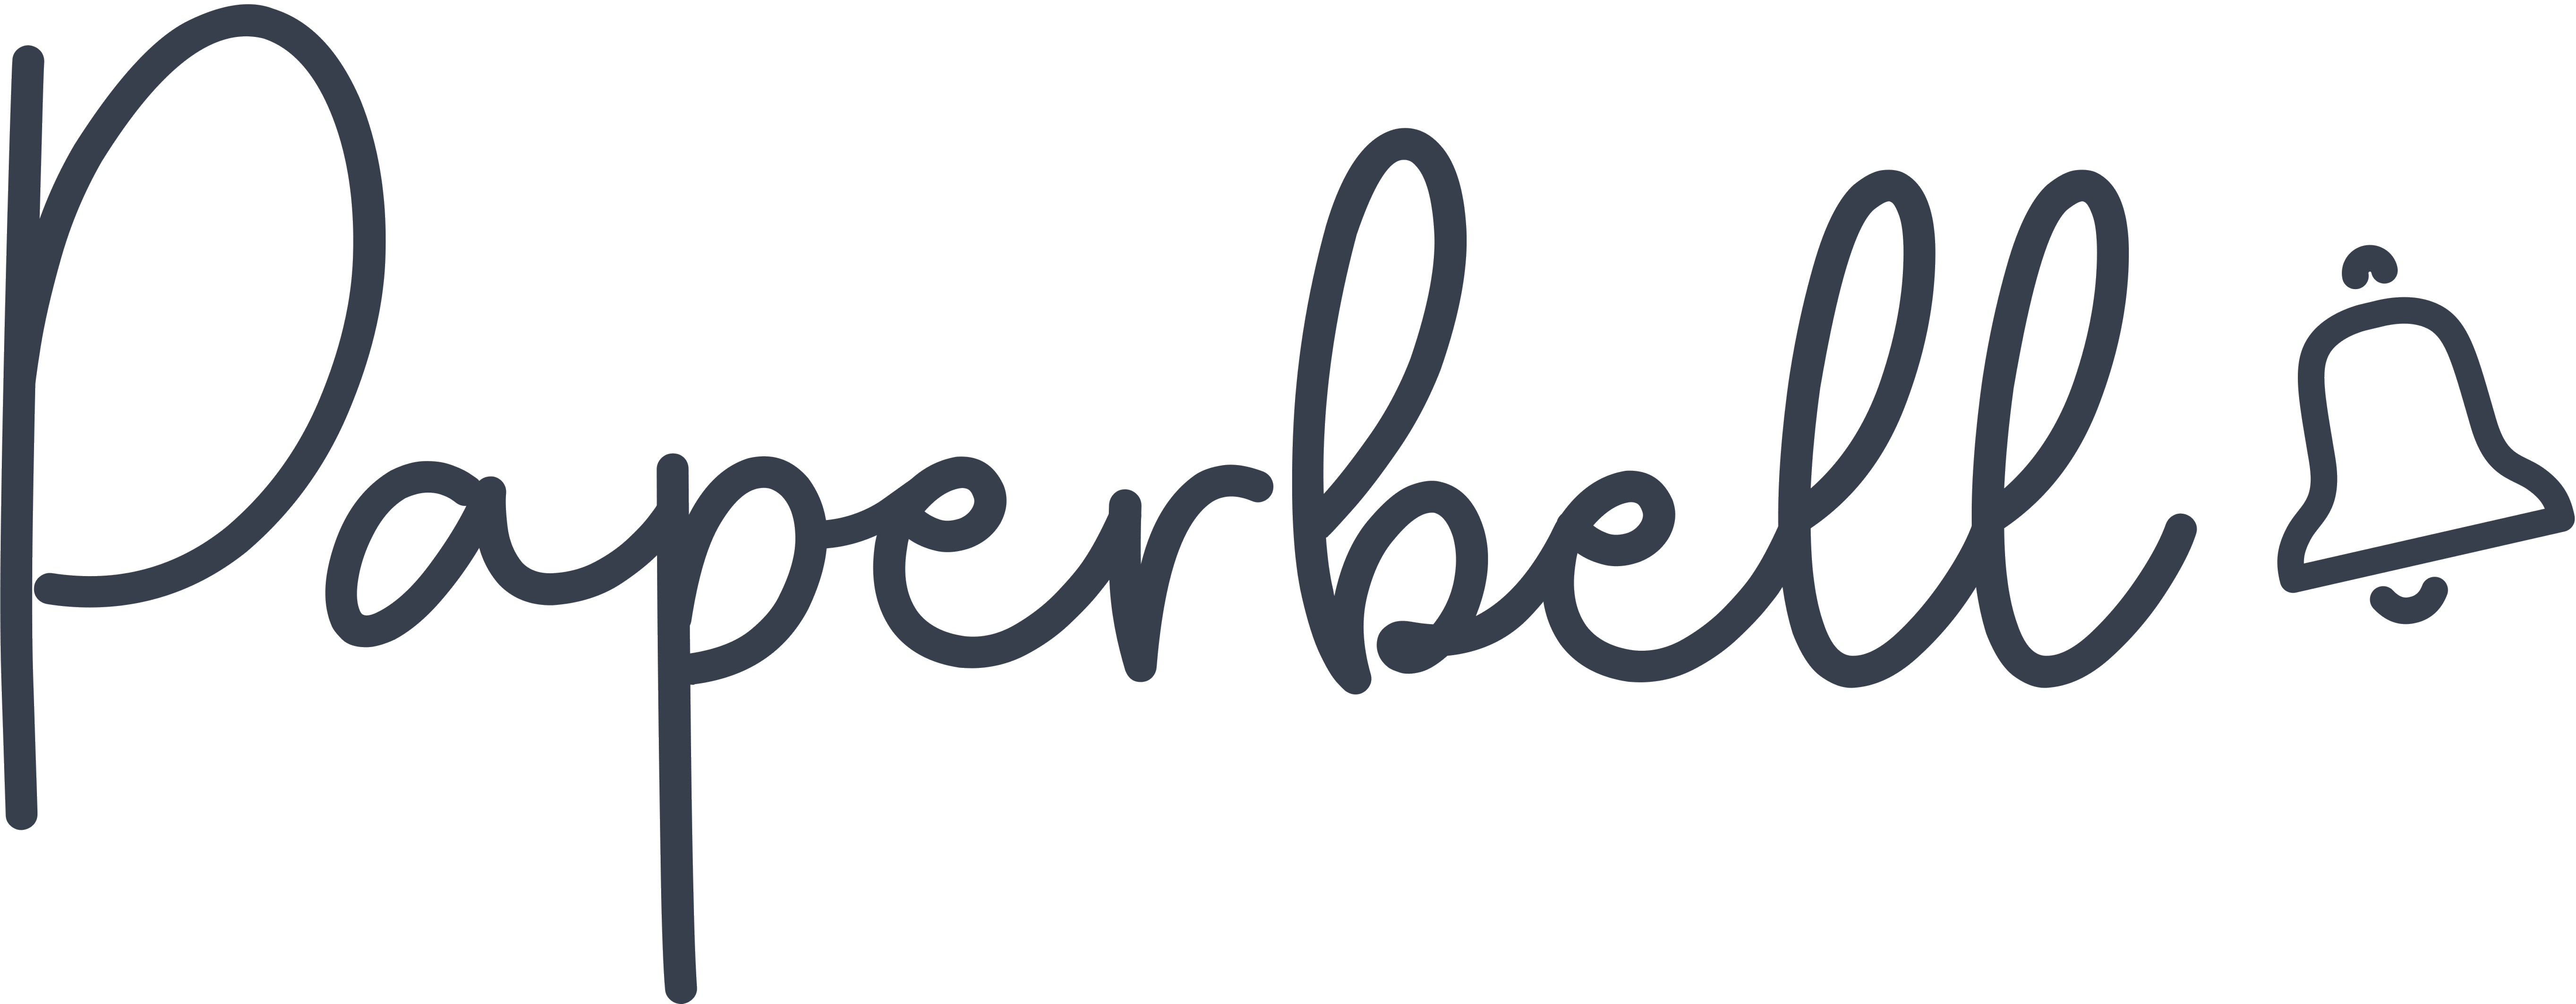 Paperbell logo